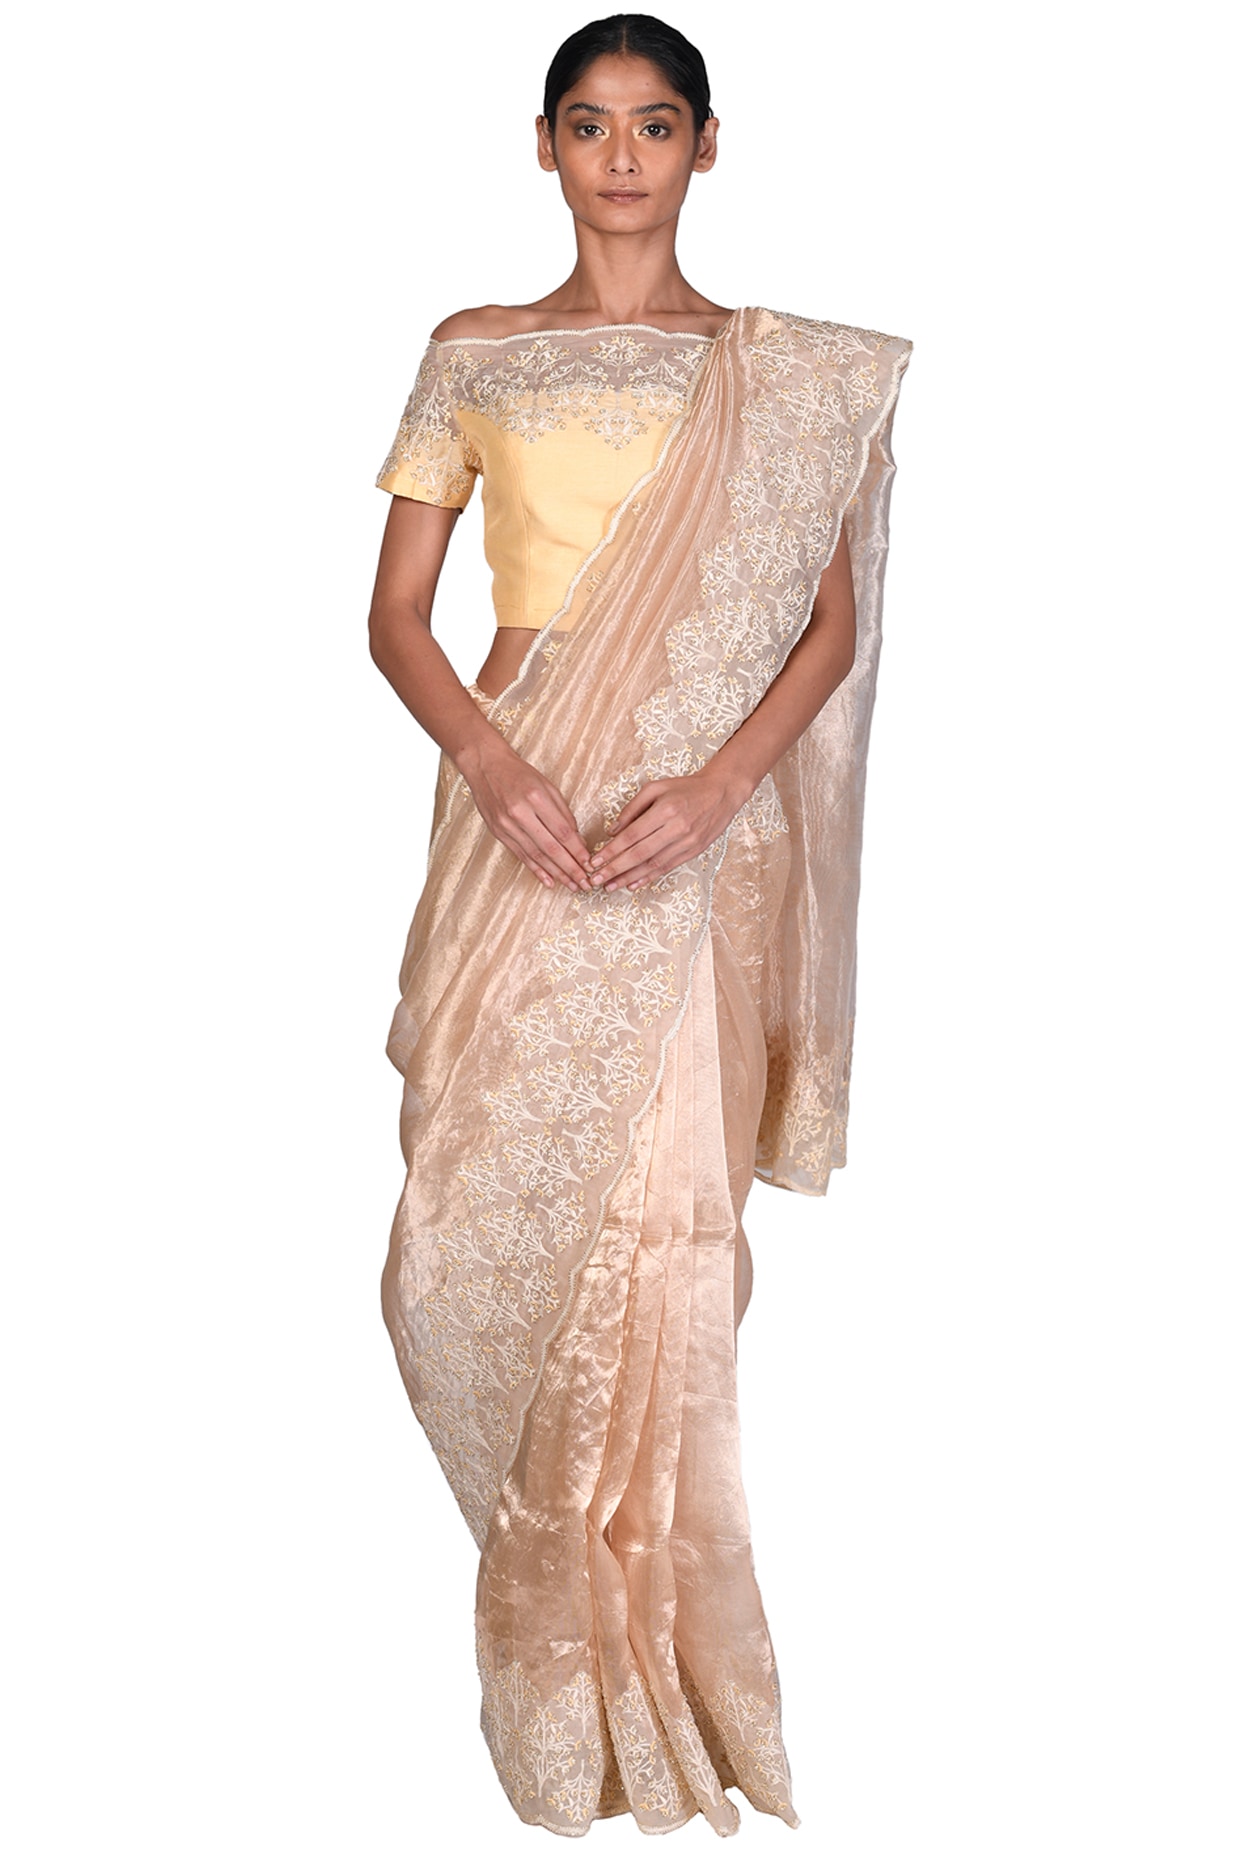 Palakka mala design on Tissue Saree | Kerala saree blouse designs, Set saree,  Saree